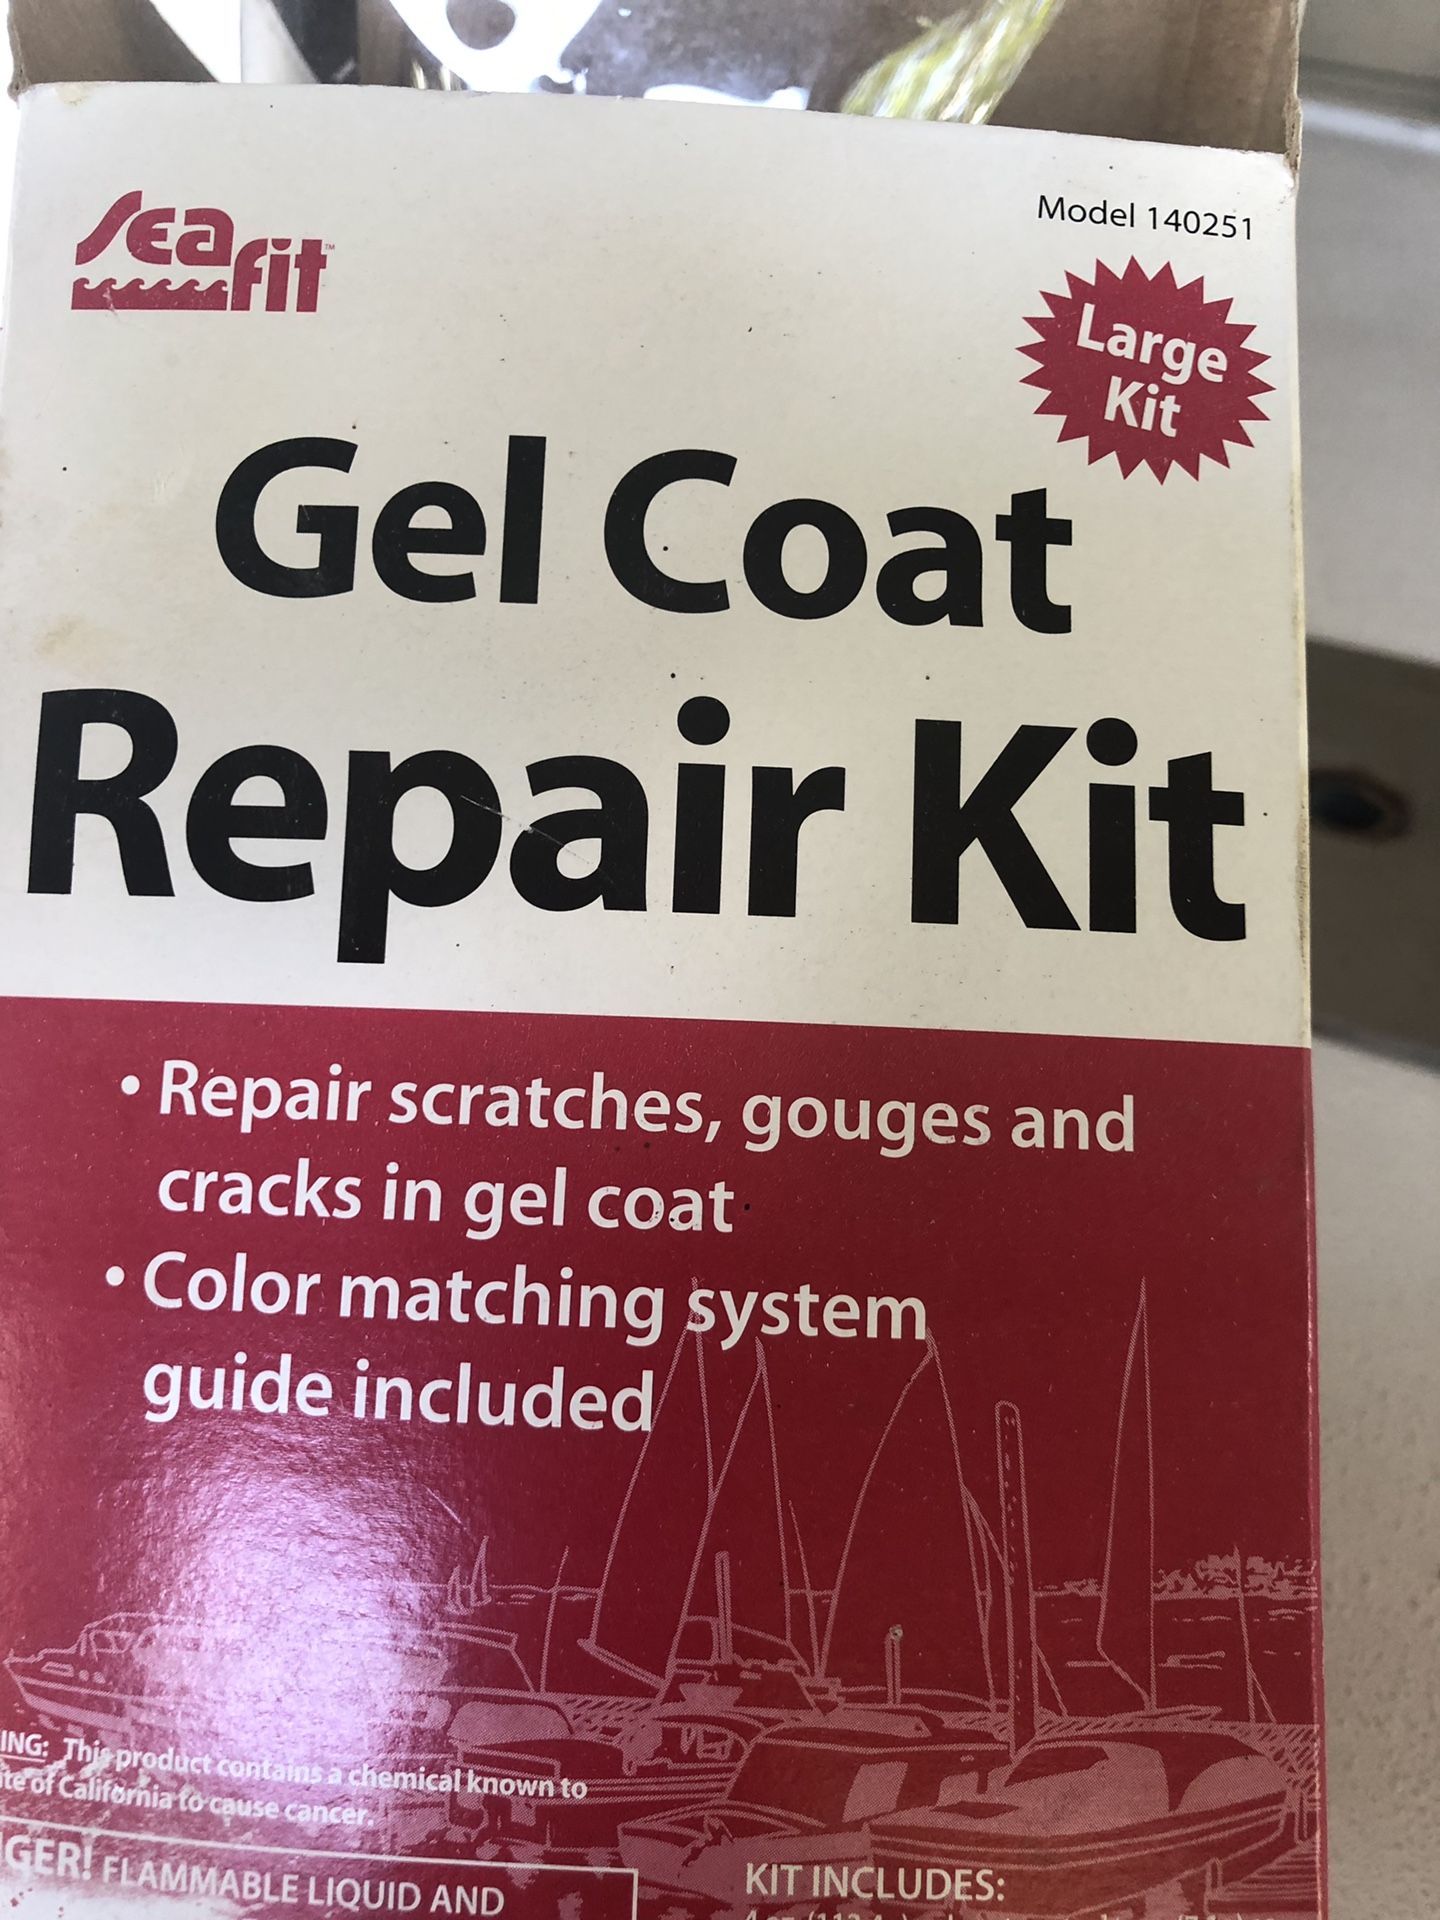 Gel coat repair kit